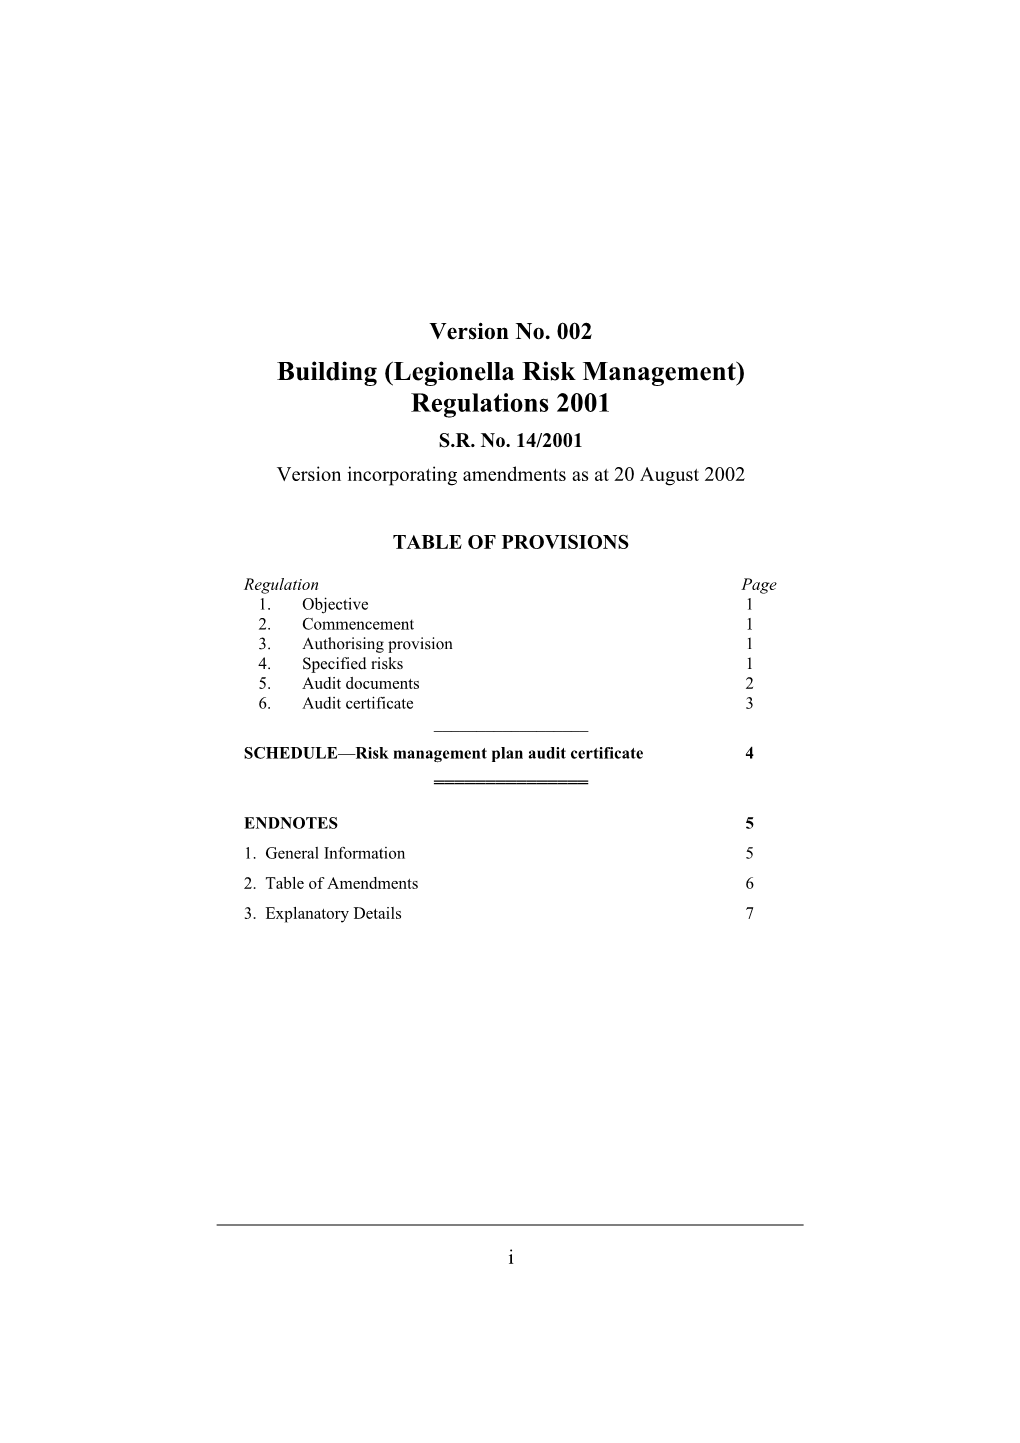 Building (Legionella Risk Management) Regulations 2001